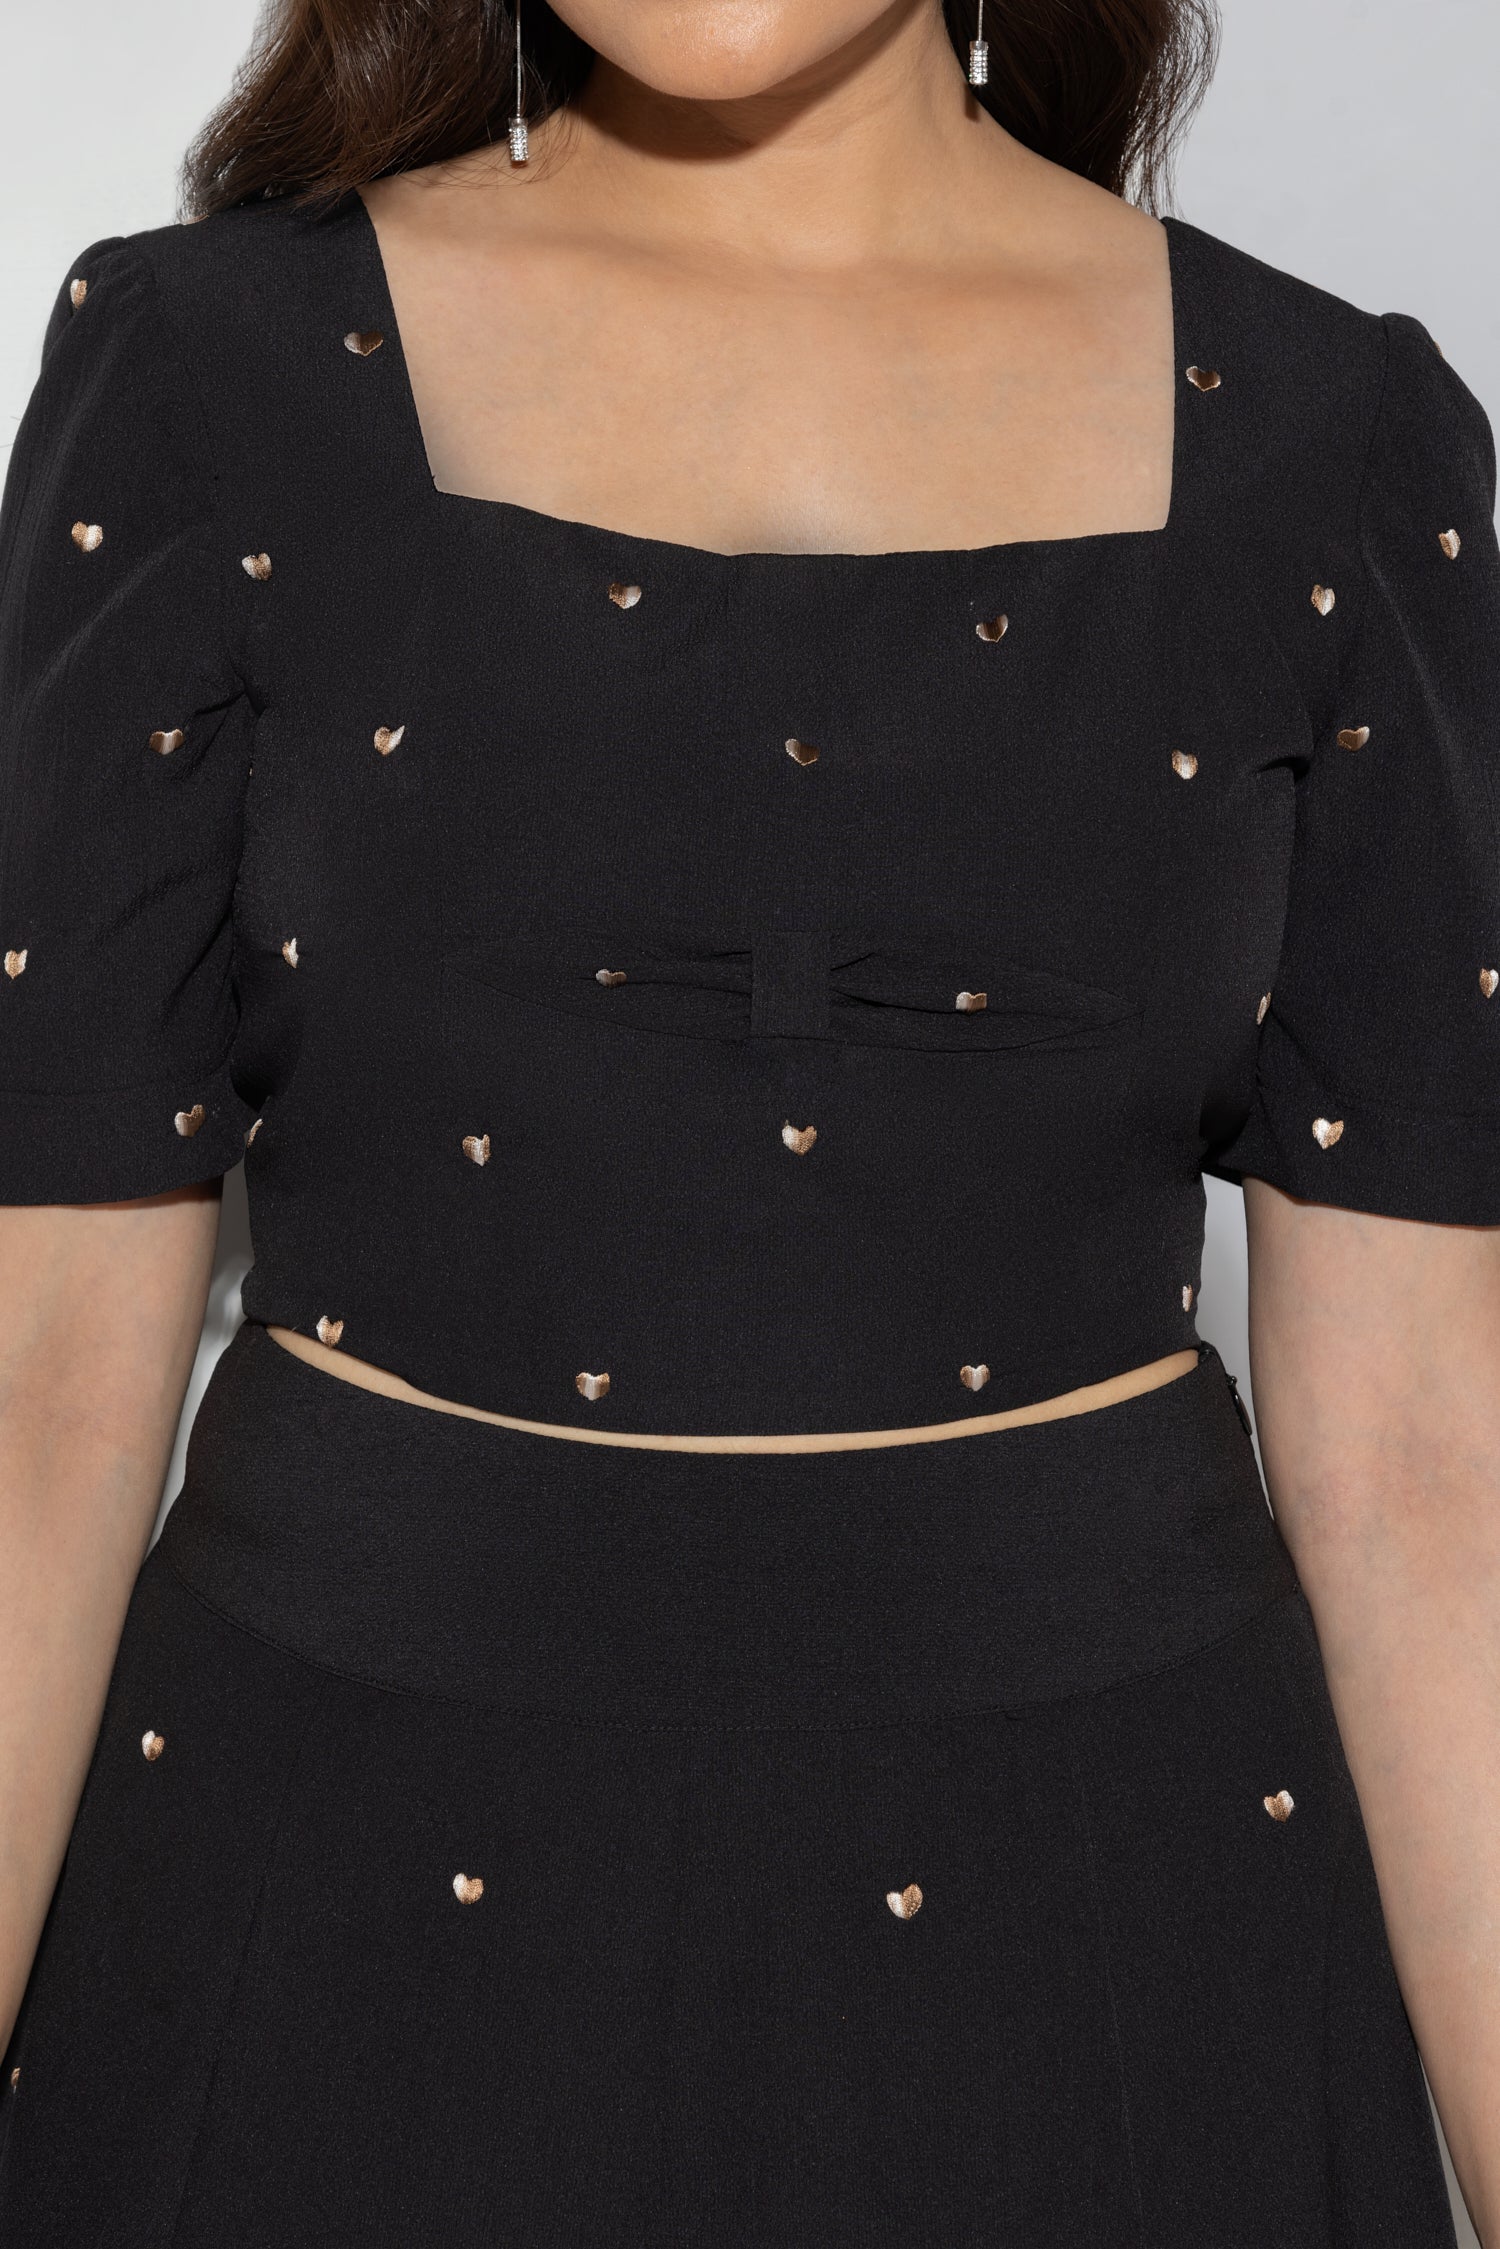 Black heart Smocked Crop Top (half sleeves) with Skirt